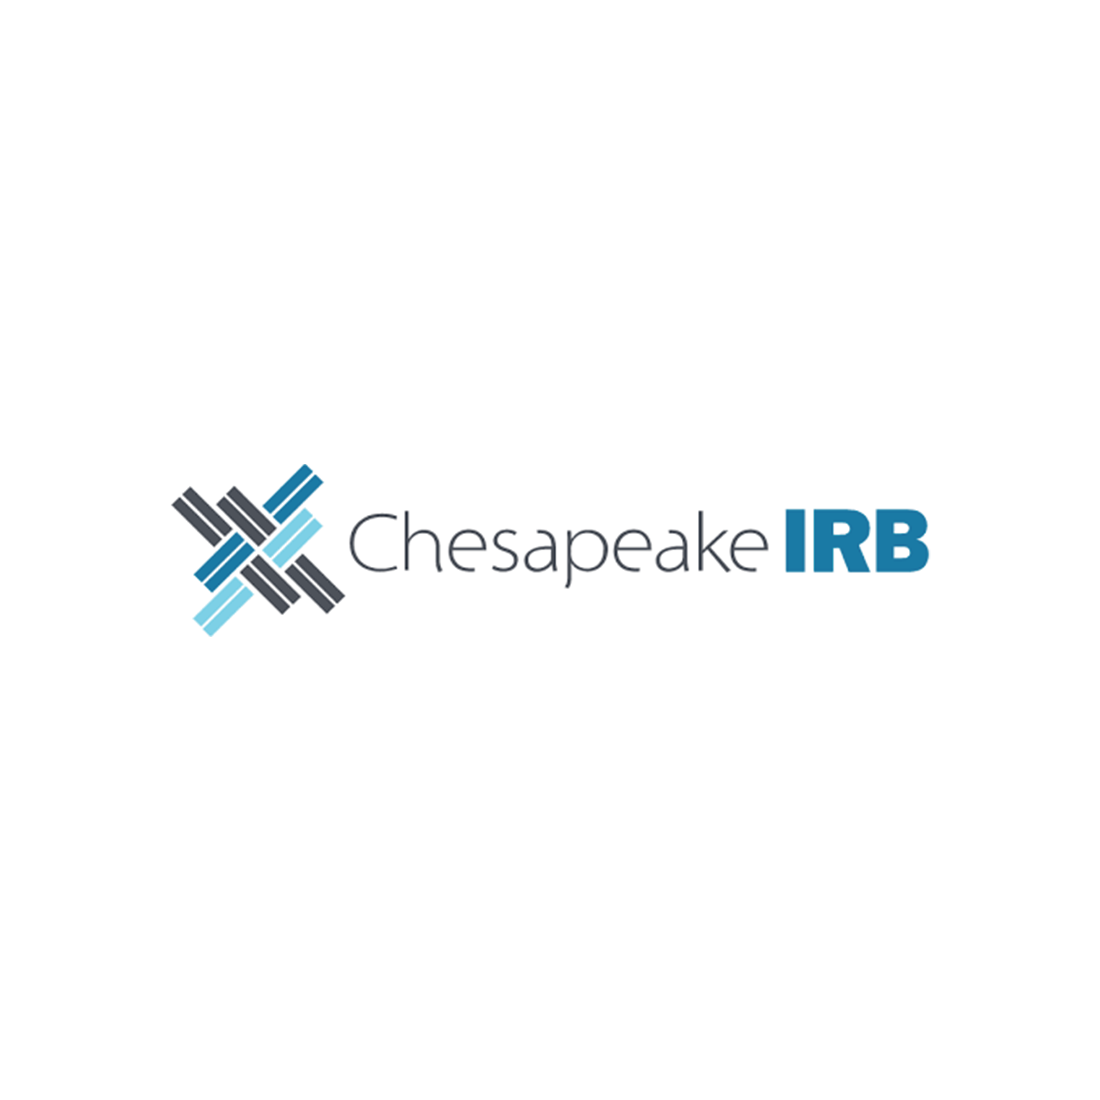 Chesapeake IRB